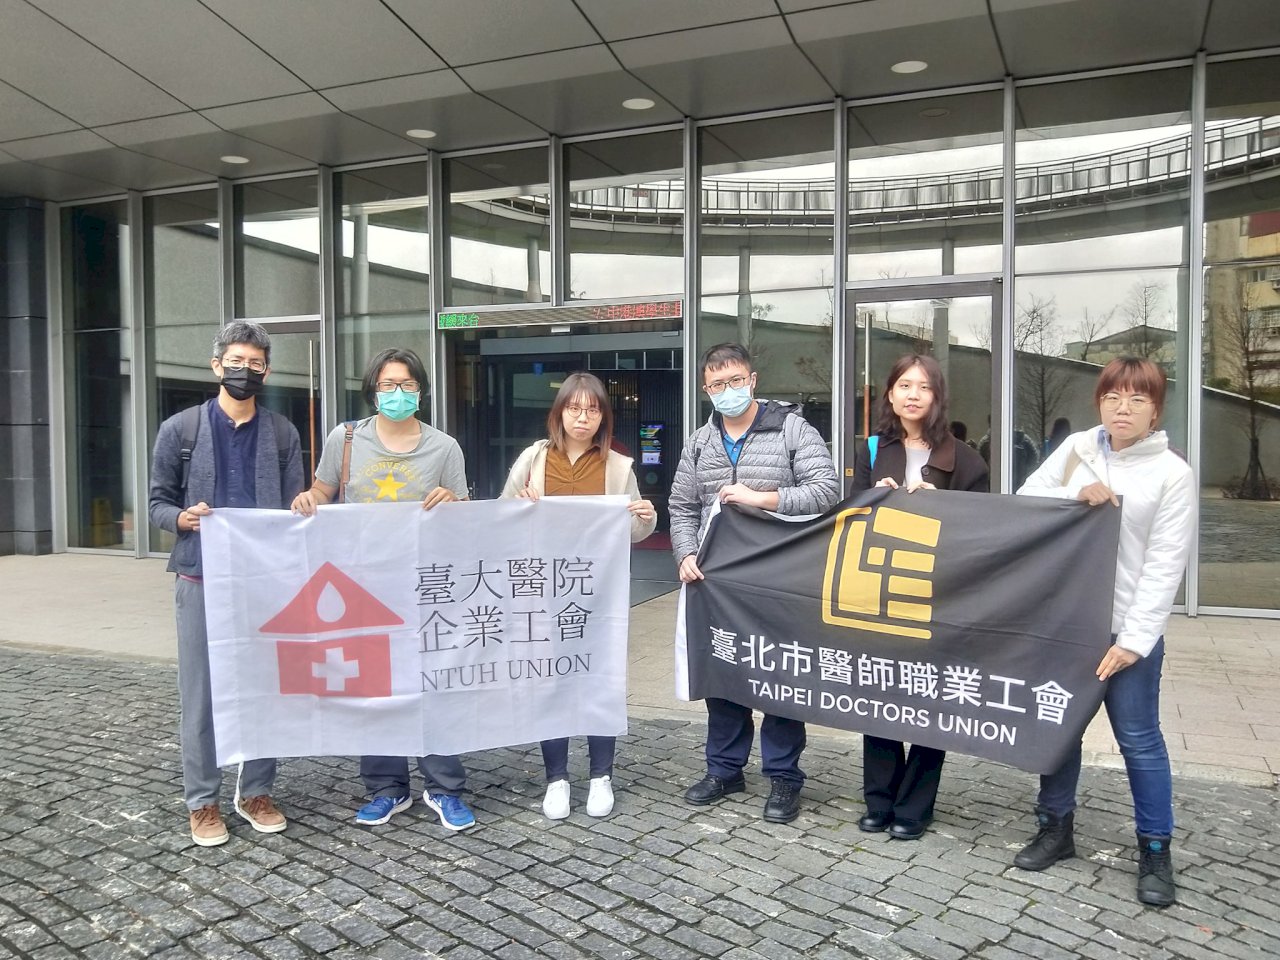 武漢肺炎衝擊／醫護人員限制出國 工會抗議權益遭侵害